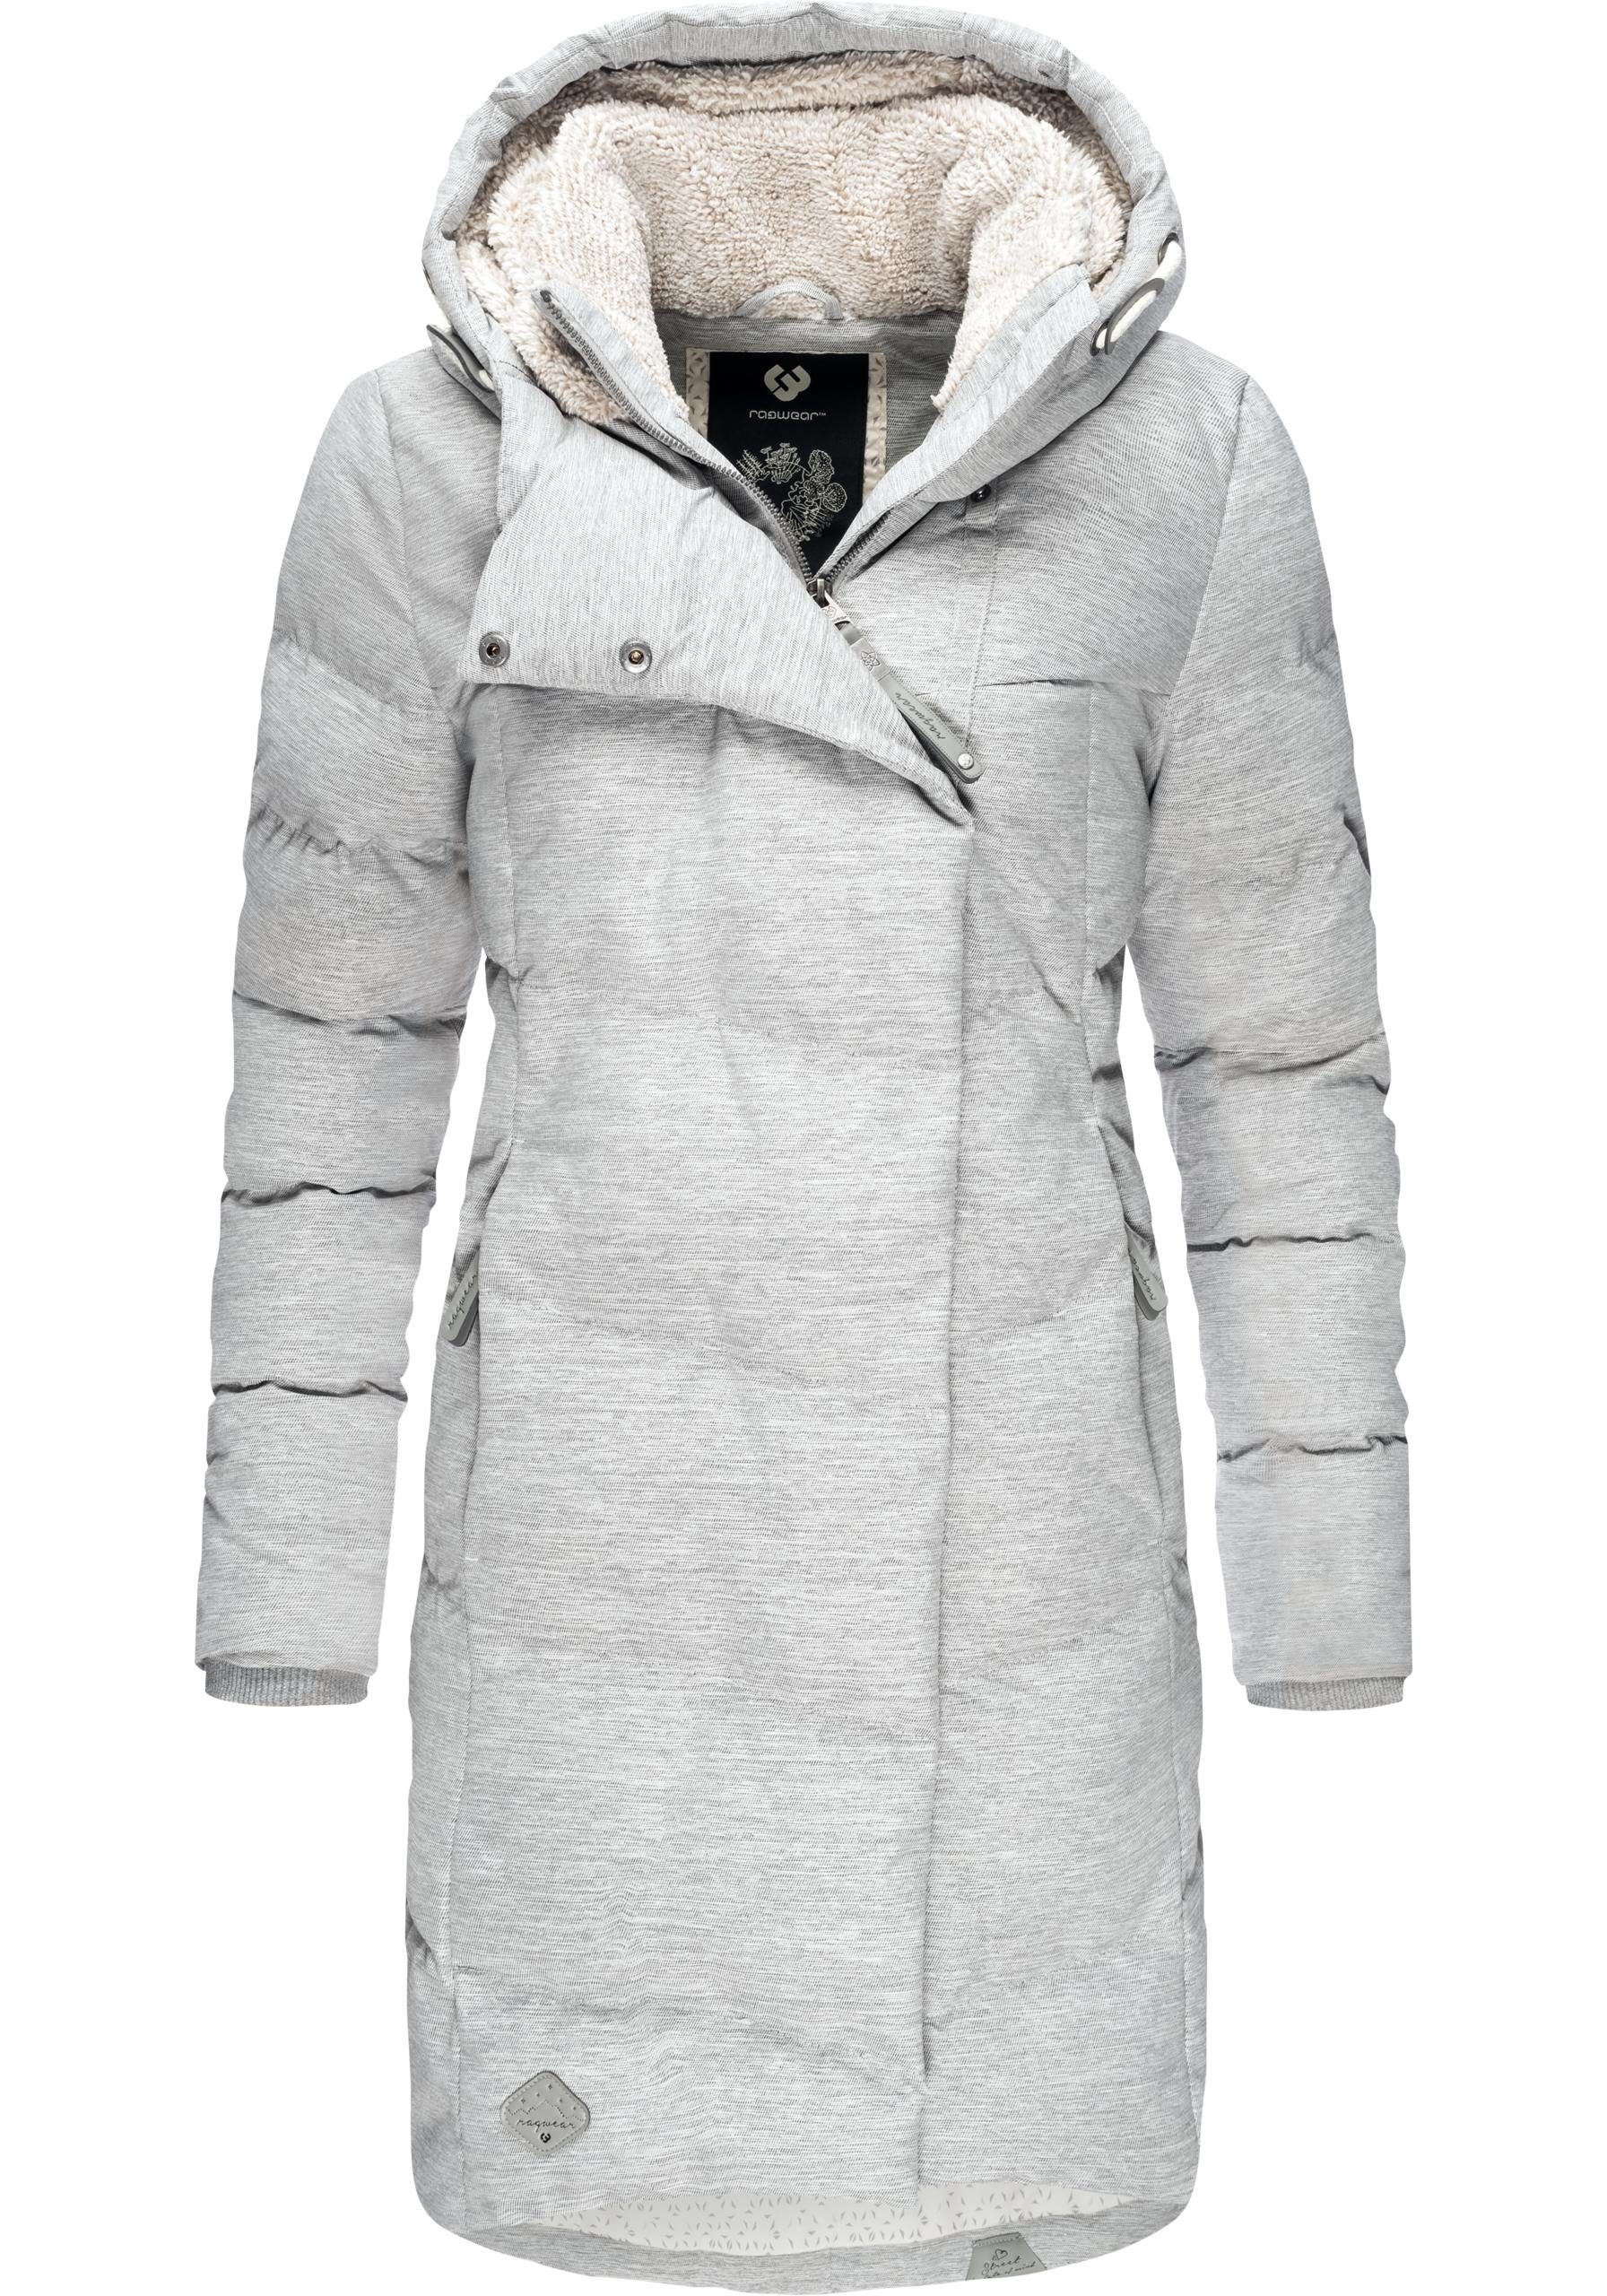 Weißer Mantel online kaufen | OTTO